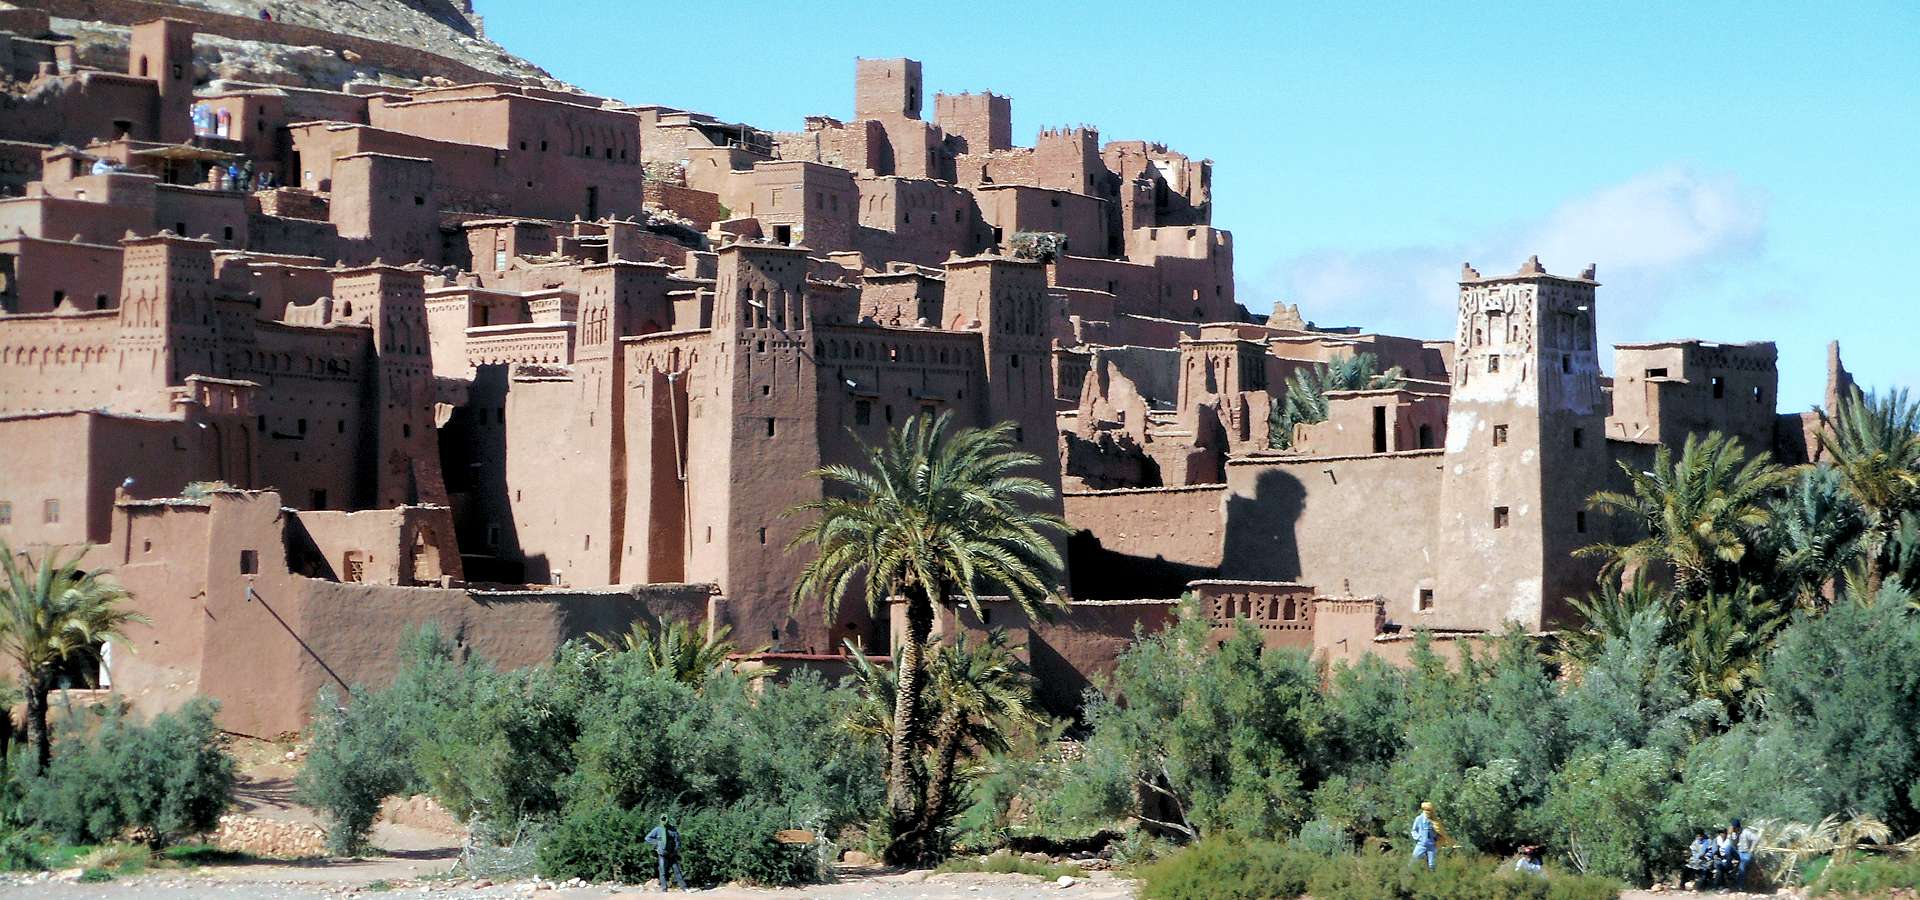 Marocco. Ait Ben Haddou e Ouarzazate